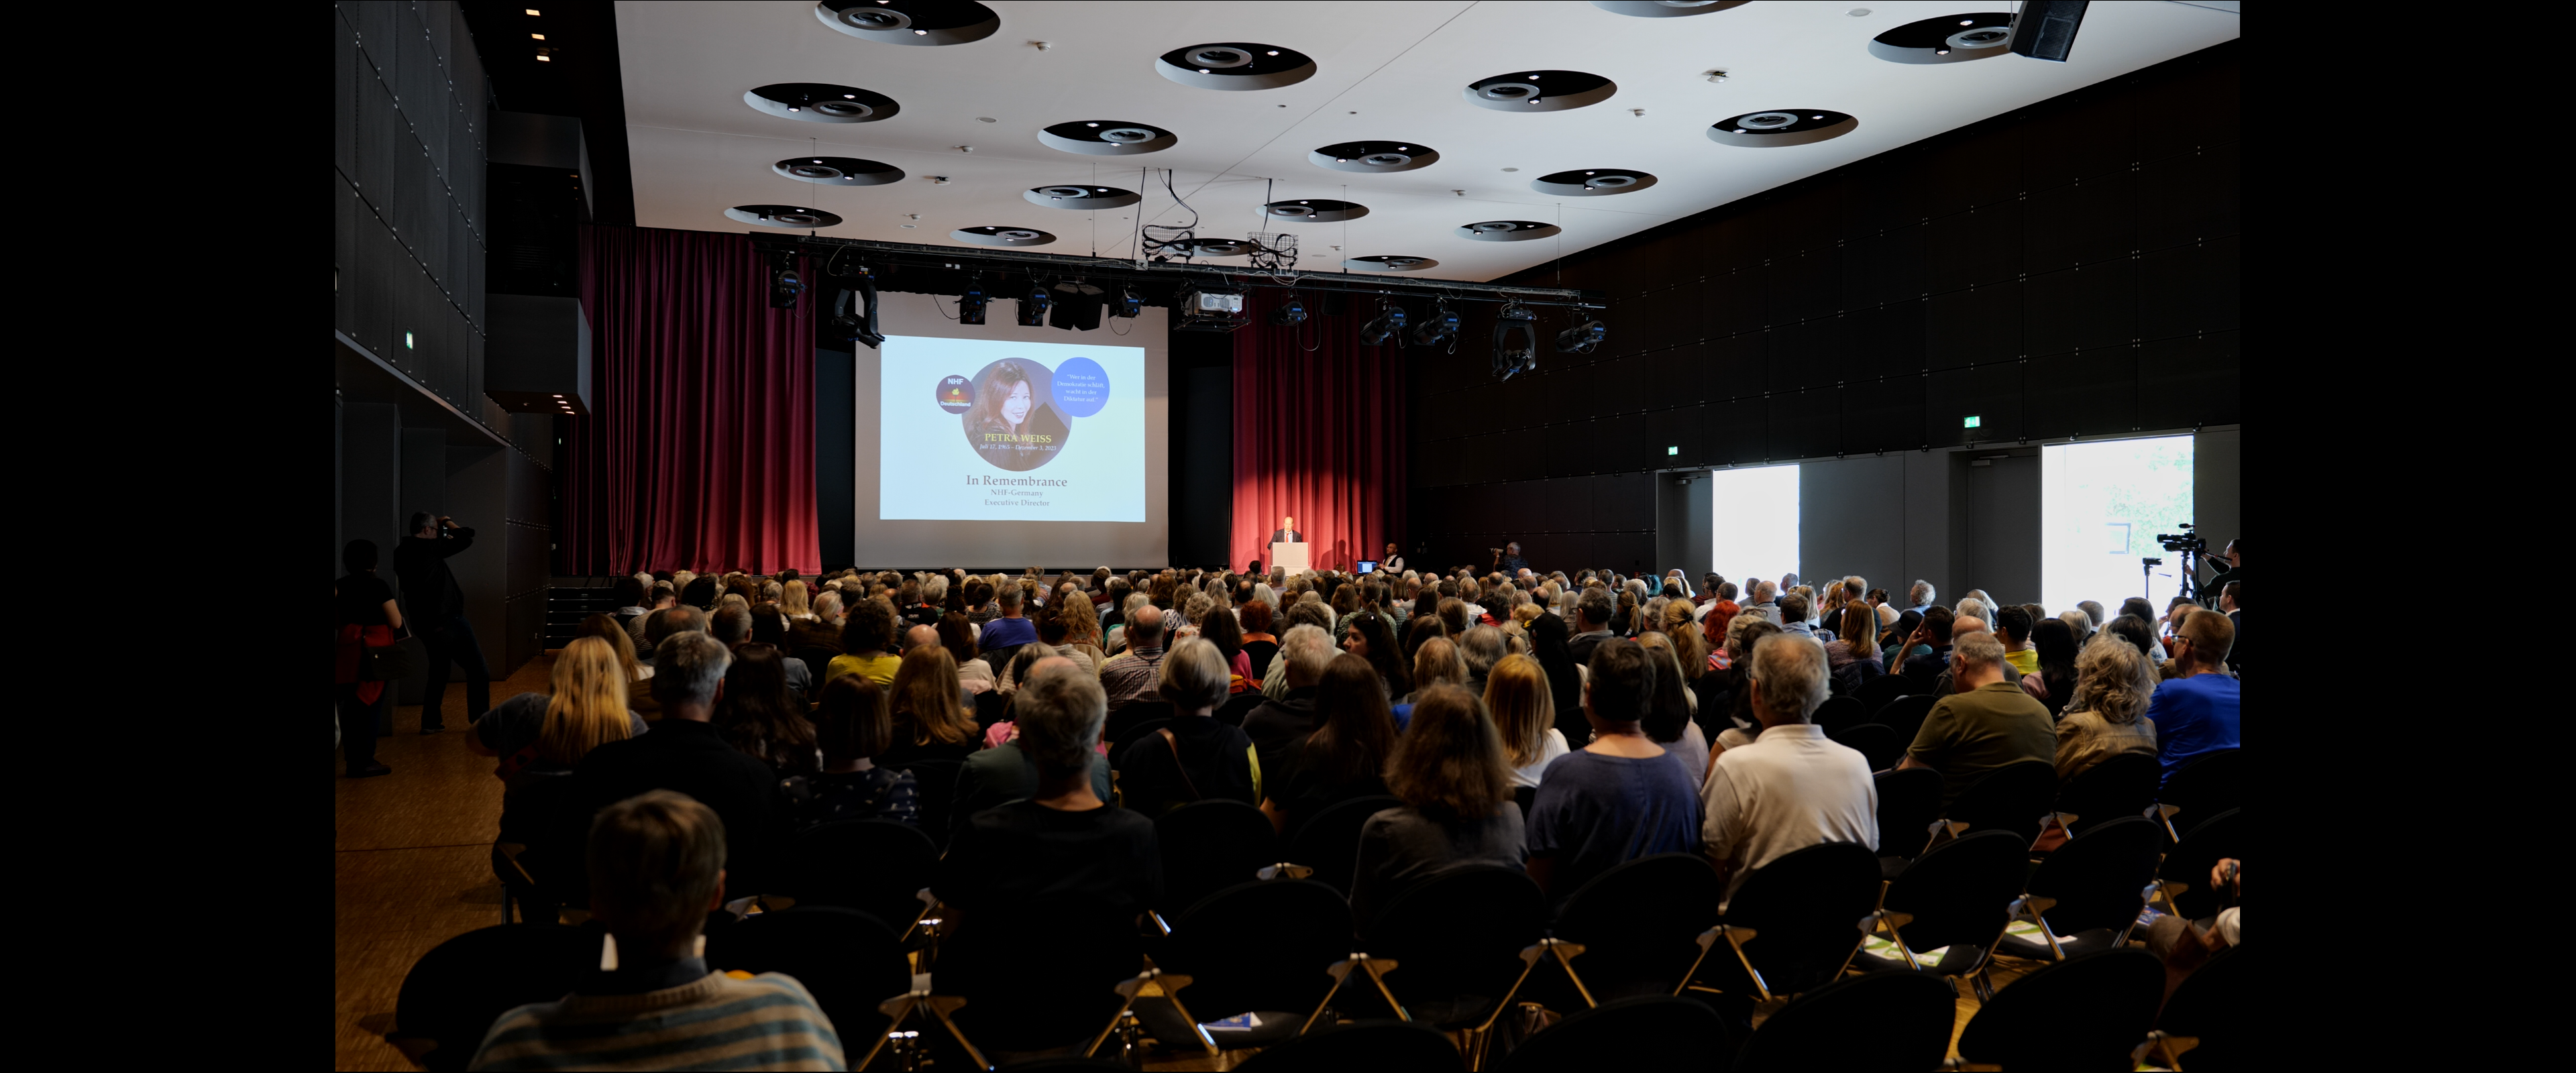 Der Saal in der Harmonie Heilbronn war mit über 400 Teilnehmern ausgebucht.